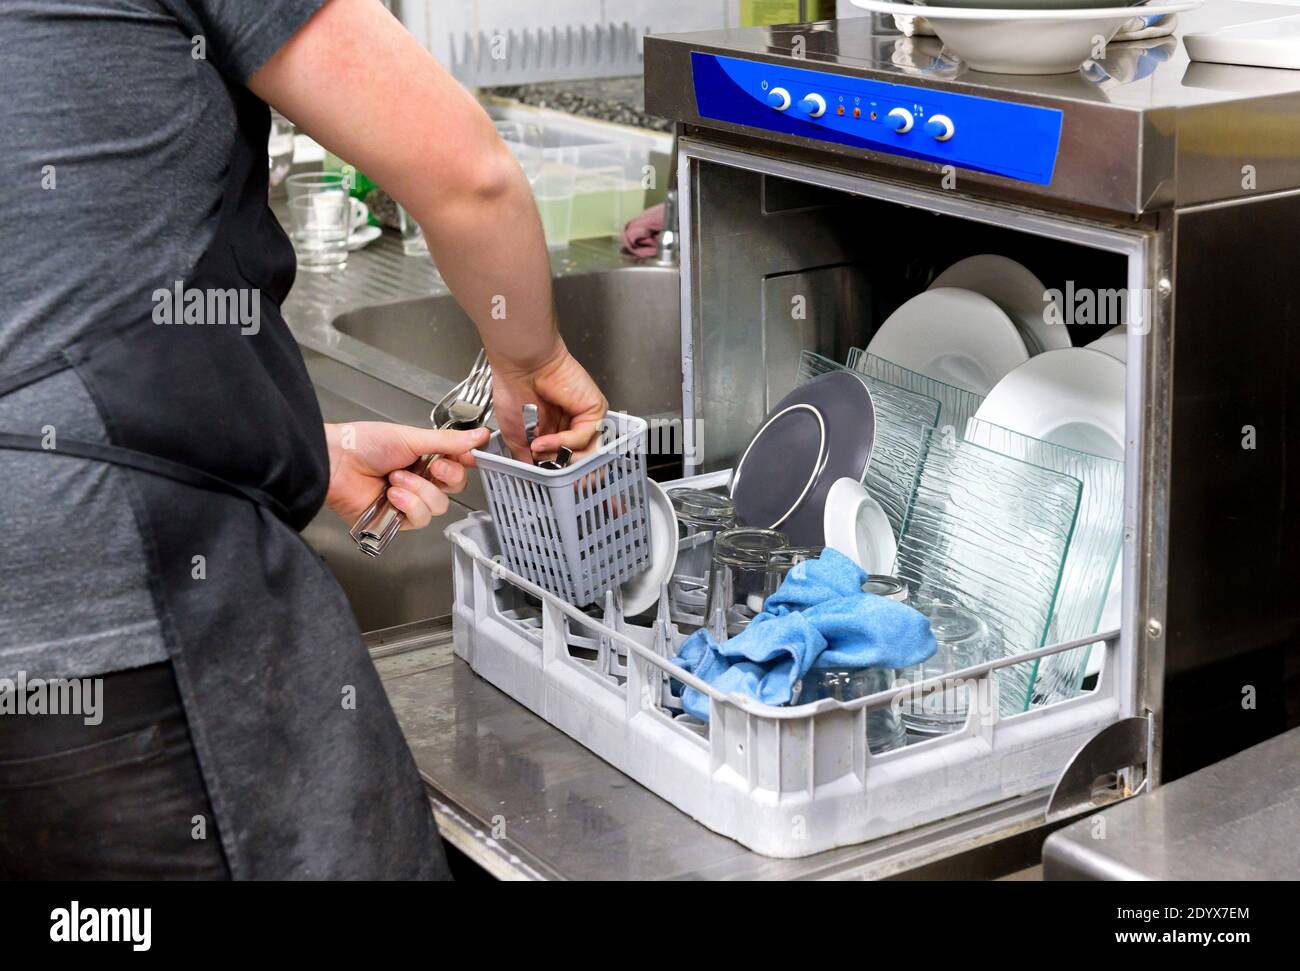 Ouvrier de cuisine de restaurant vider un lave-vaisselle enlever les couverts propres de le panier en gros plan sur ses mains et la porte ouverte de la machine Banque D'Images